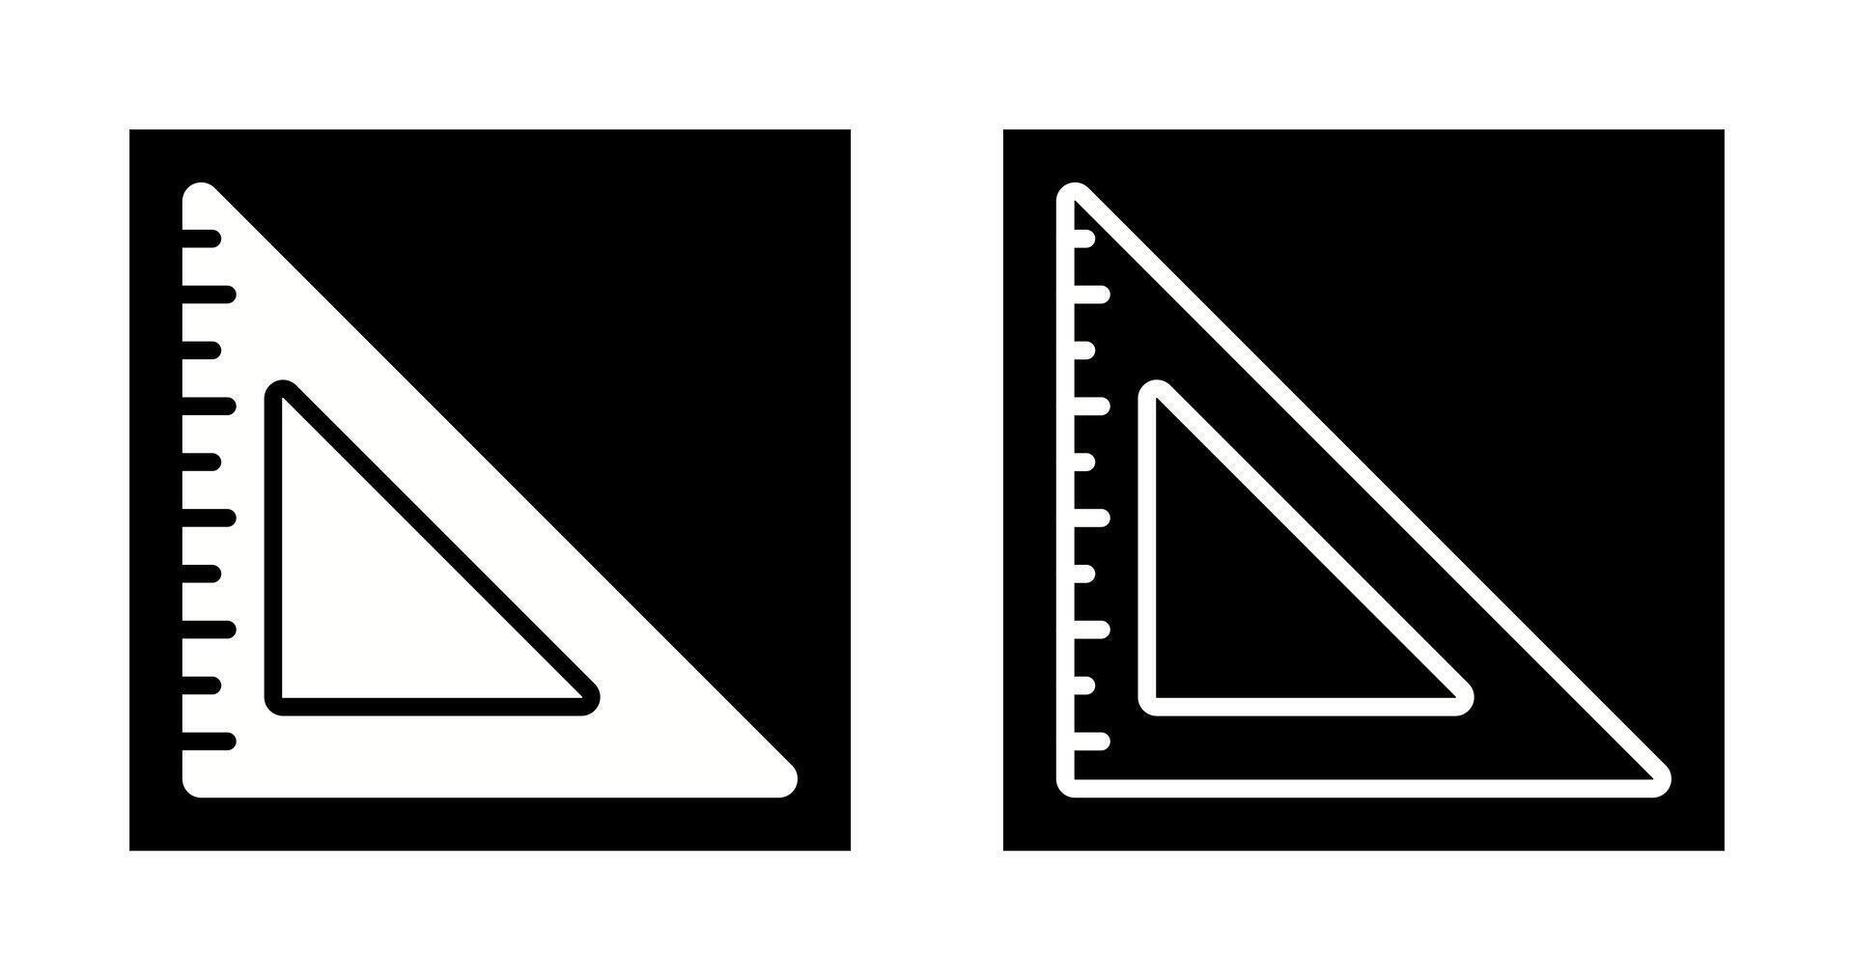 icono de vector de regla triangular